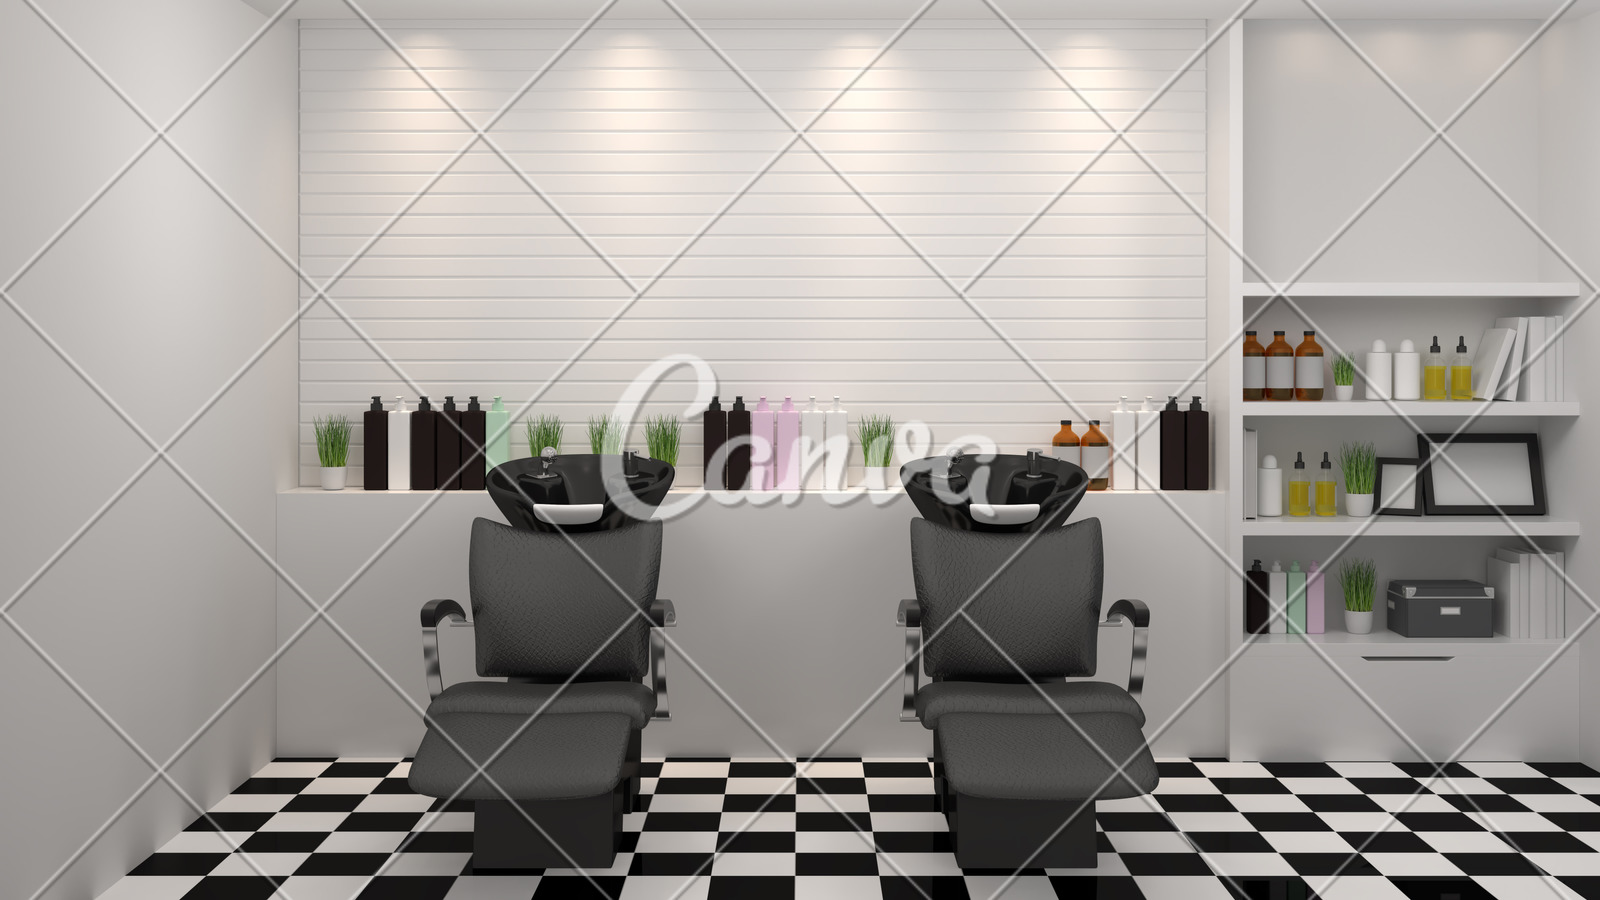 Salon Interior Modern Style Spa Beauty 3d Illustration